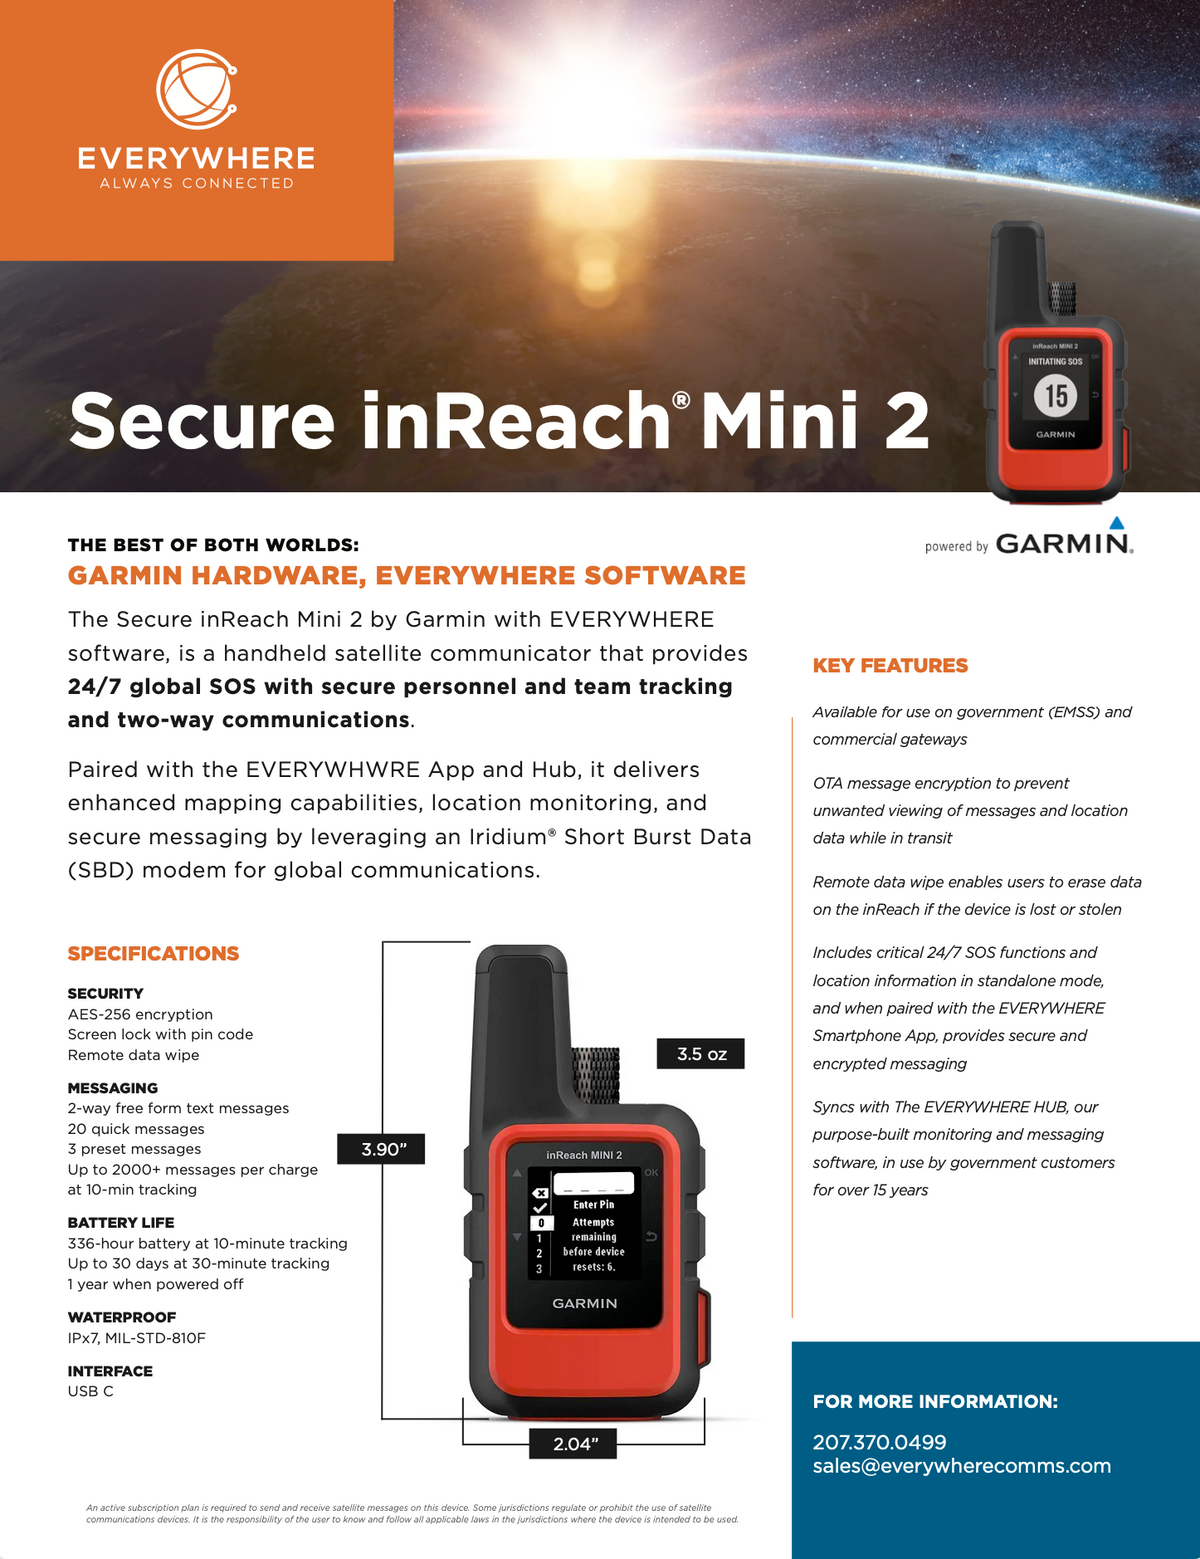 Secure inReach Brochure